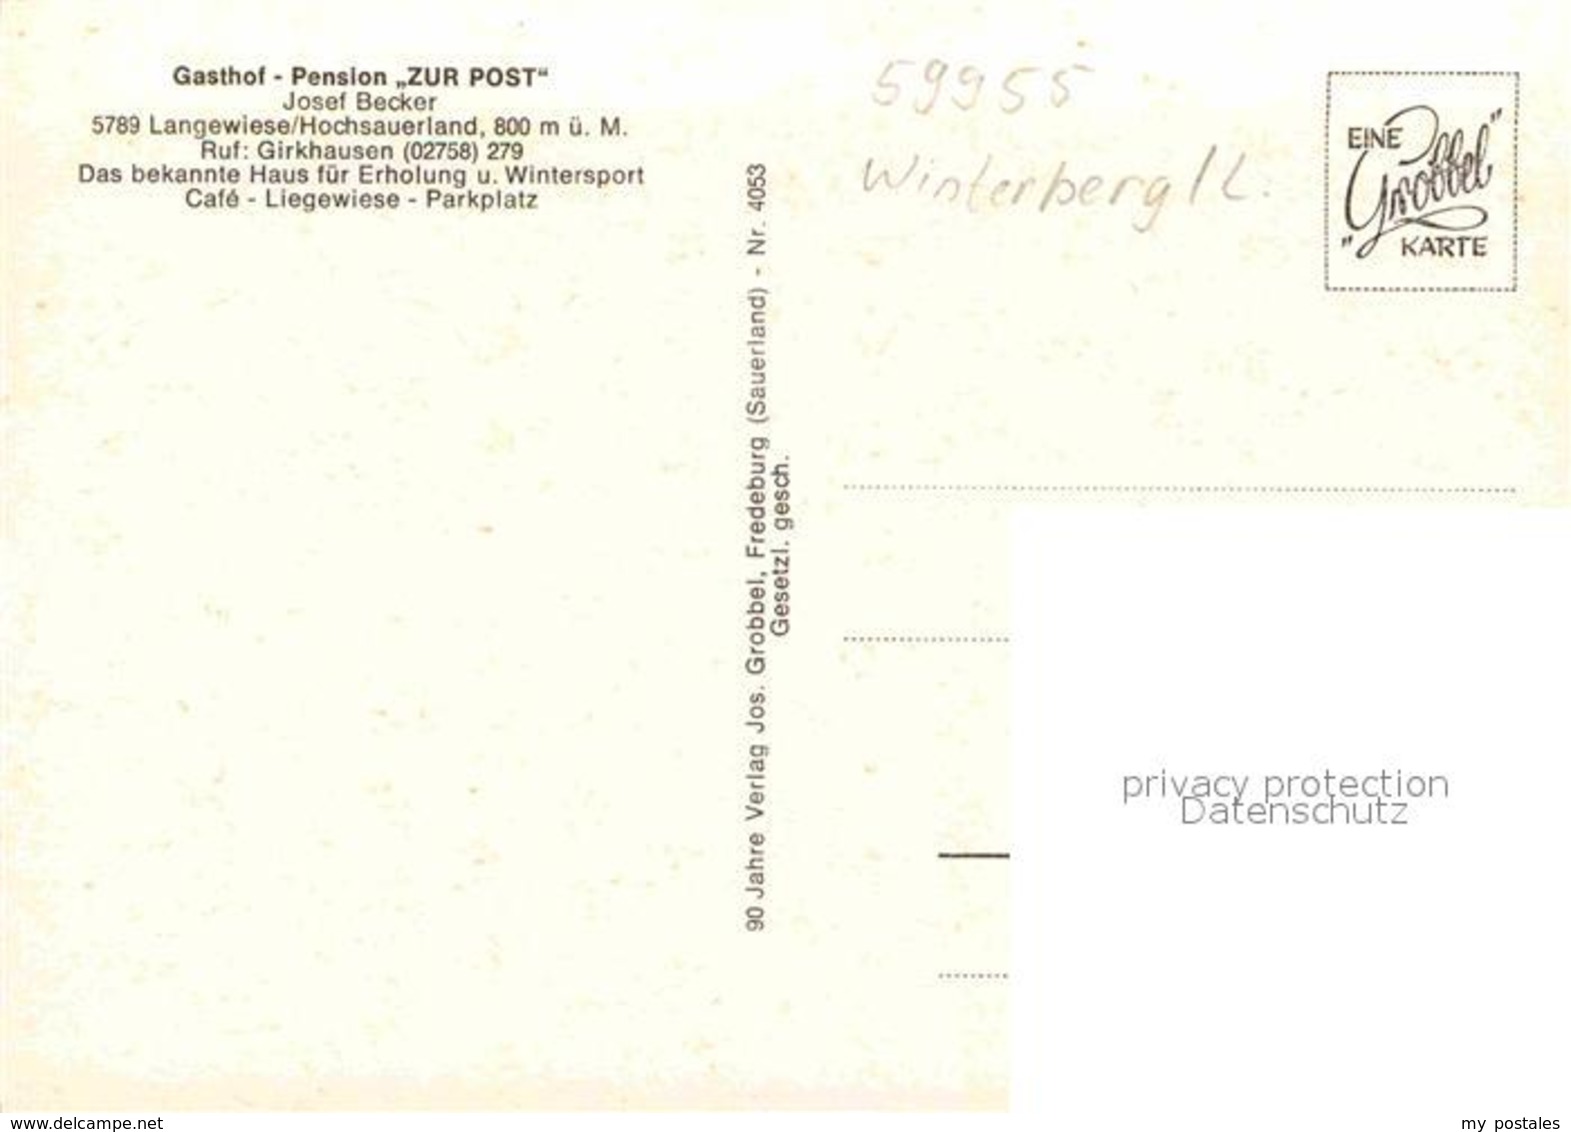 32853303 Langewiese Gasthof Pension Zur Post Winterberg - Winterberg